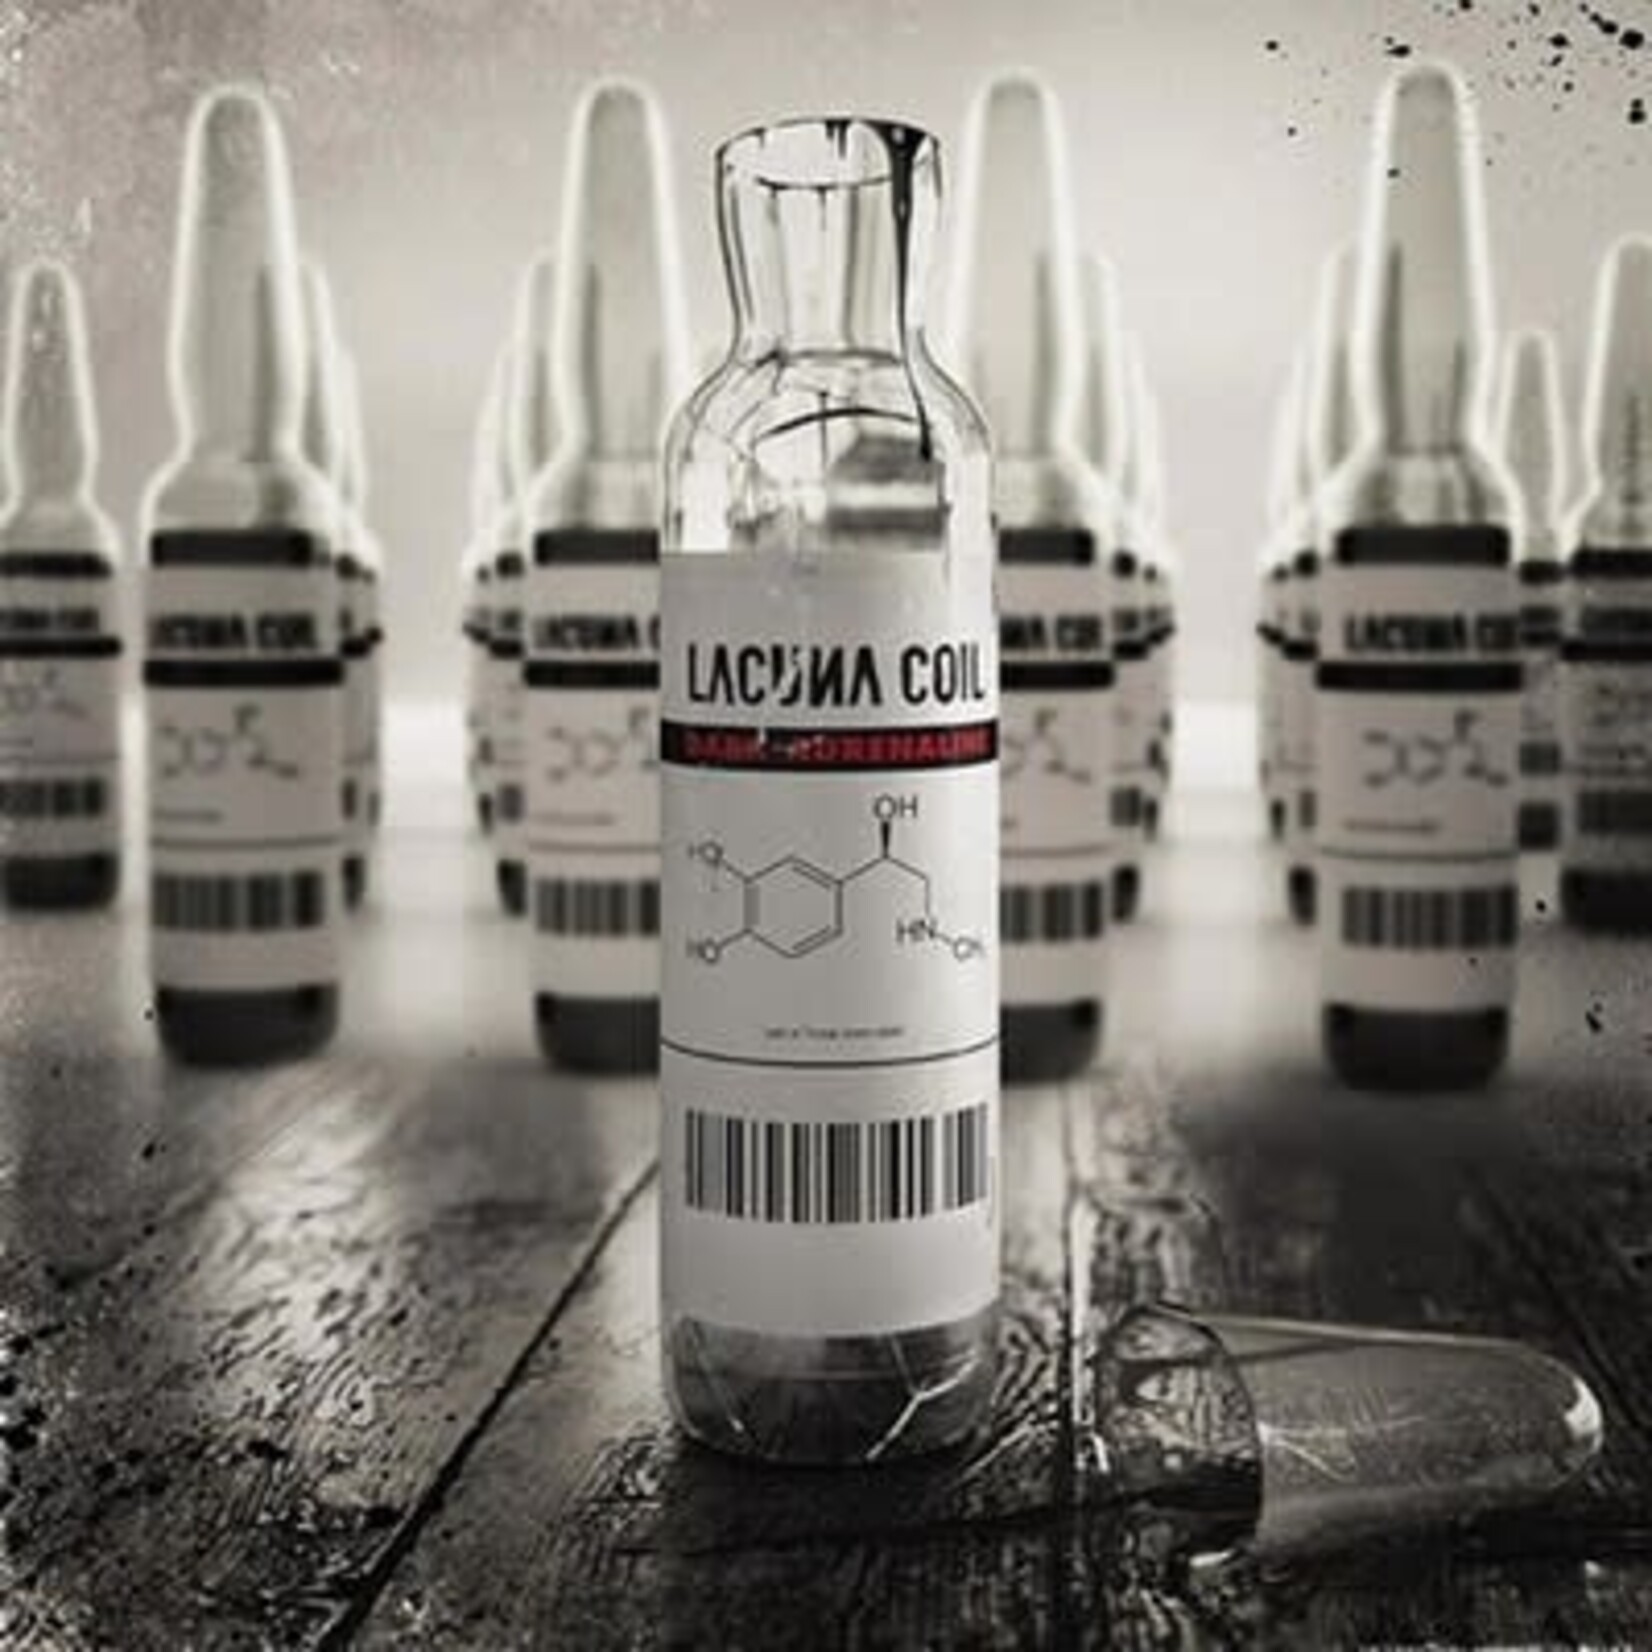 [New] Lacuna Coil: Dark Adrenaline (transparent red vinyl, reissue) [SVART]